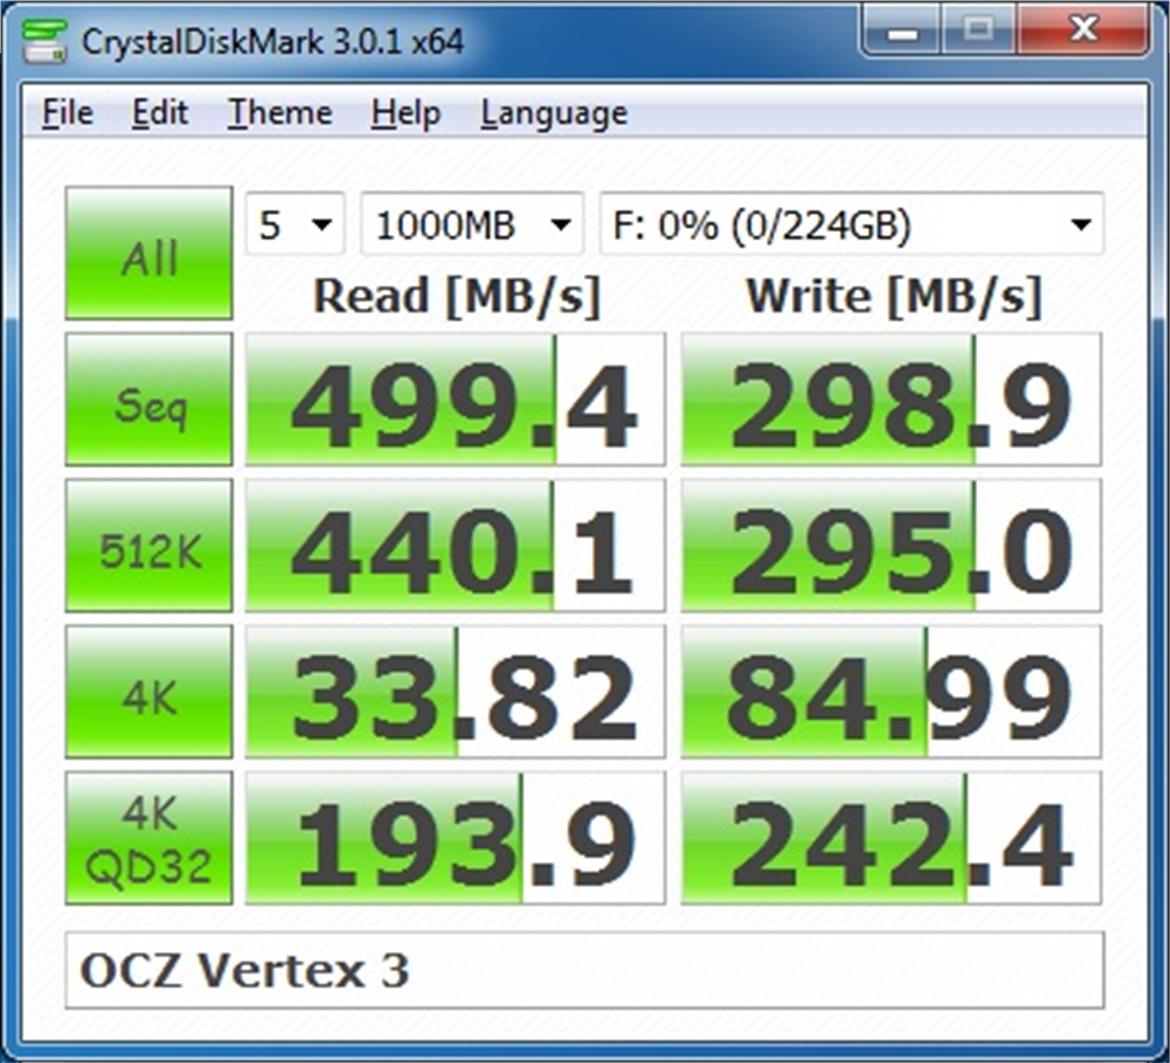 OCZ Vertex 3 SandForce SF-2000 Based SSD Preview